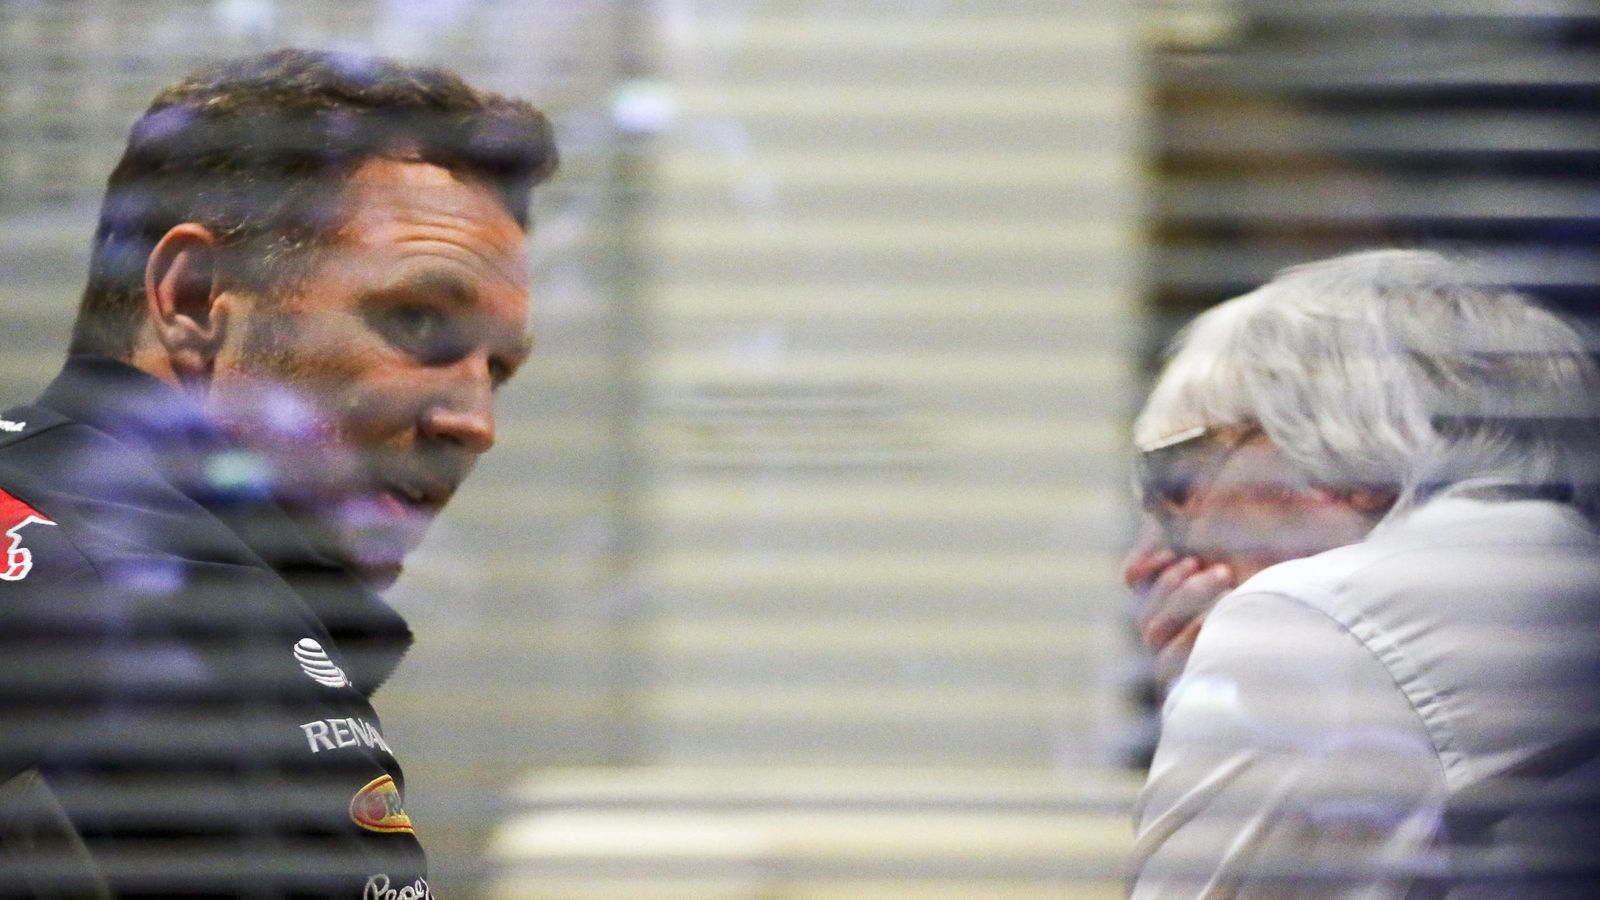 Foto: Christian Horner (izq.) y Bernie Eccleston (der.) conversan durante el Gran Premio de Rusia en Sochi (Efe)